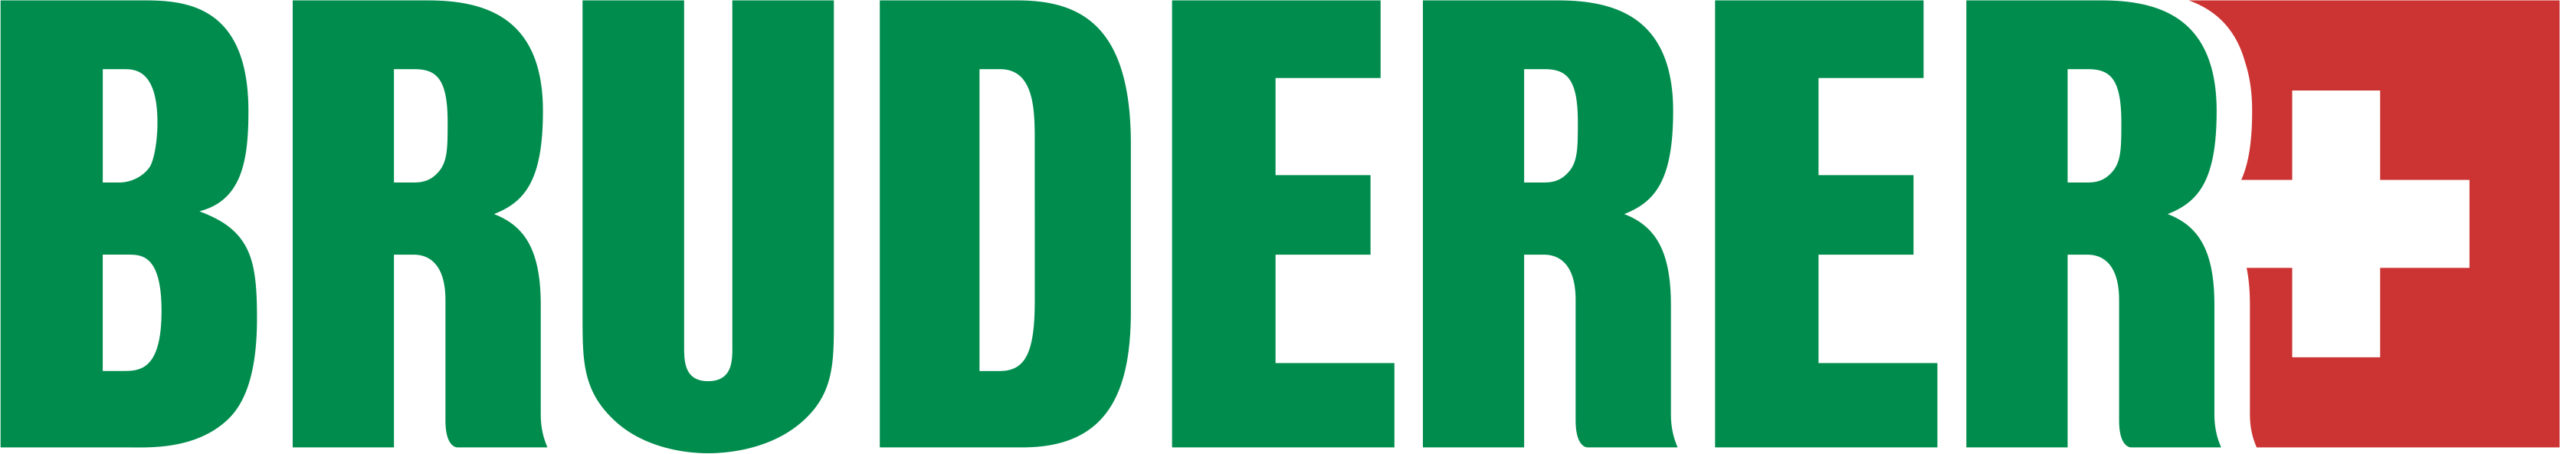 BRUDERER UK LIMITED Logo